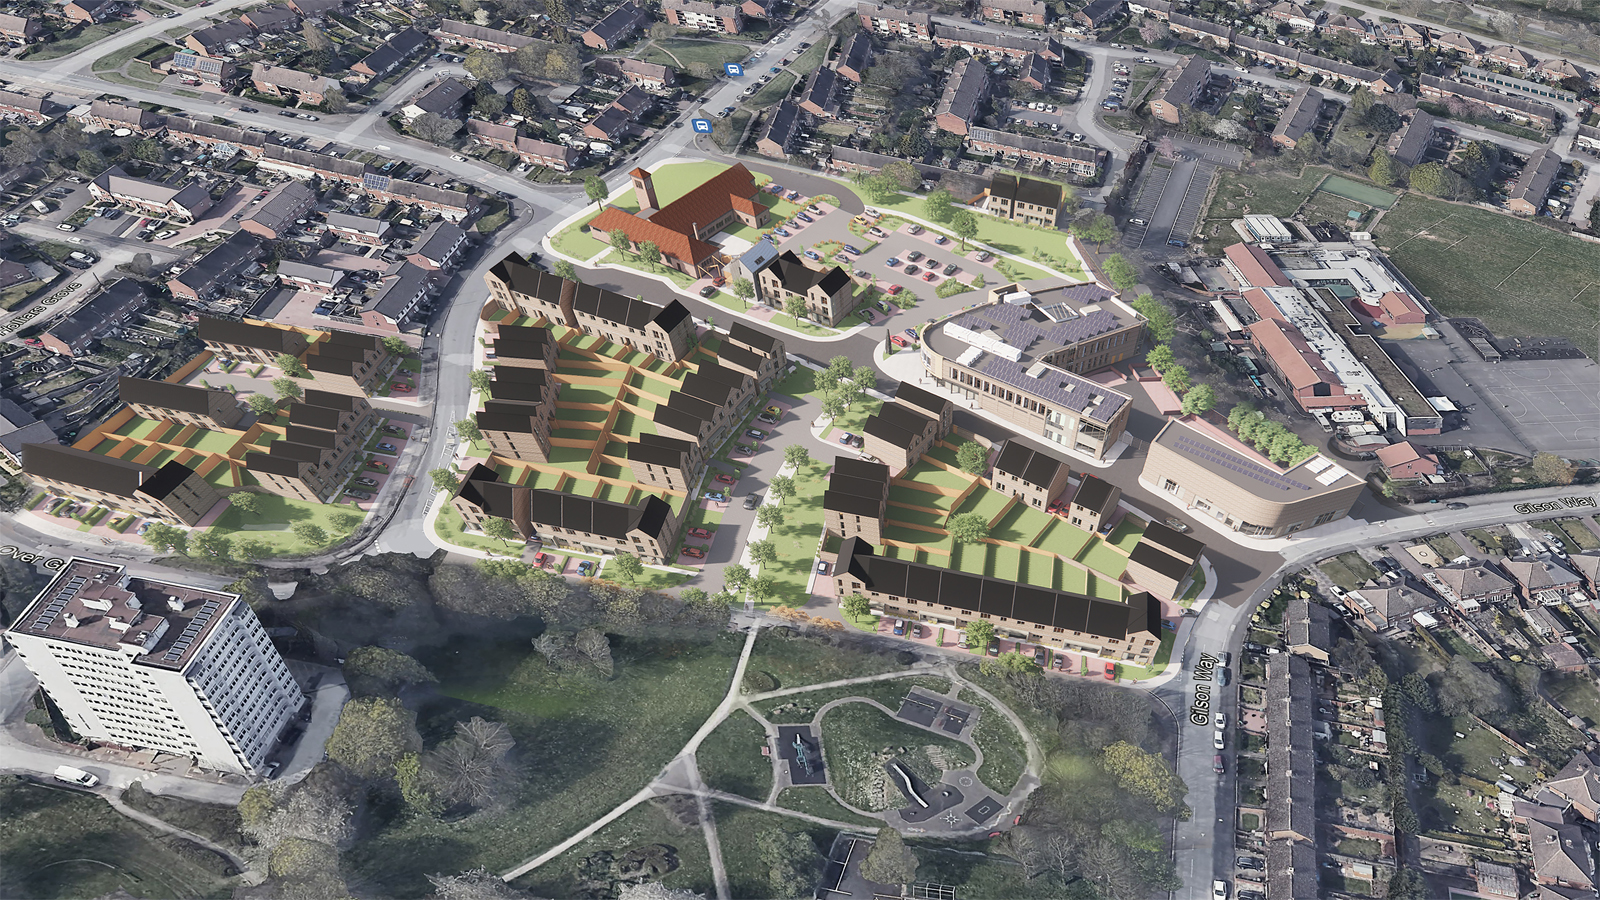 Aerial image of Kingshurst regeneration project after completion